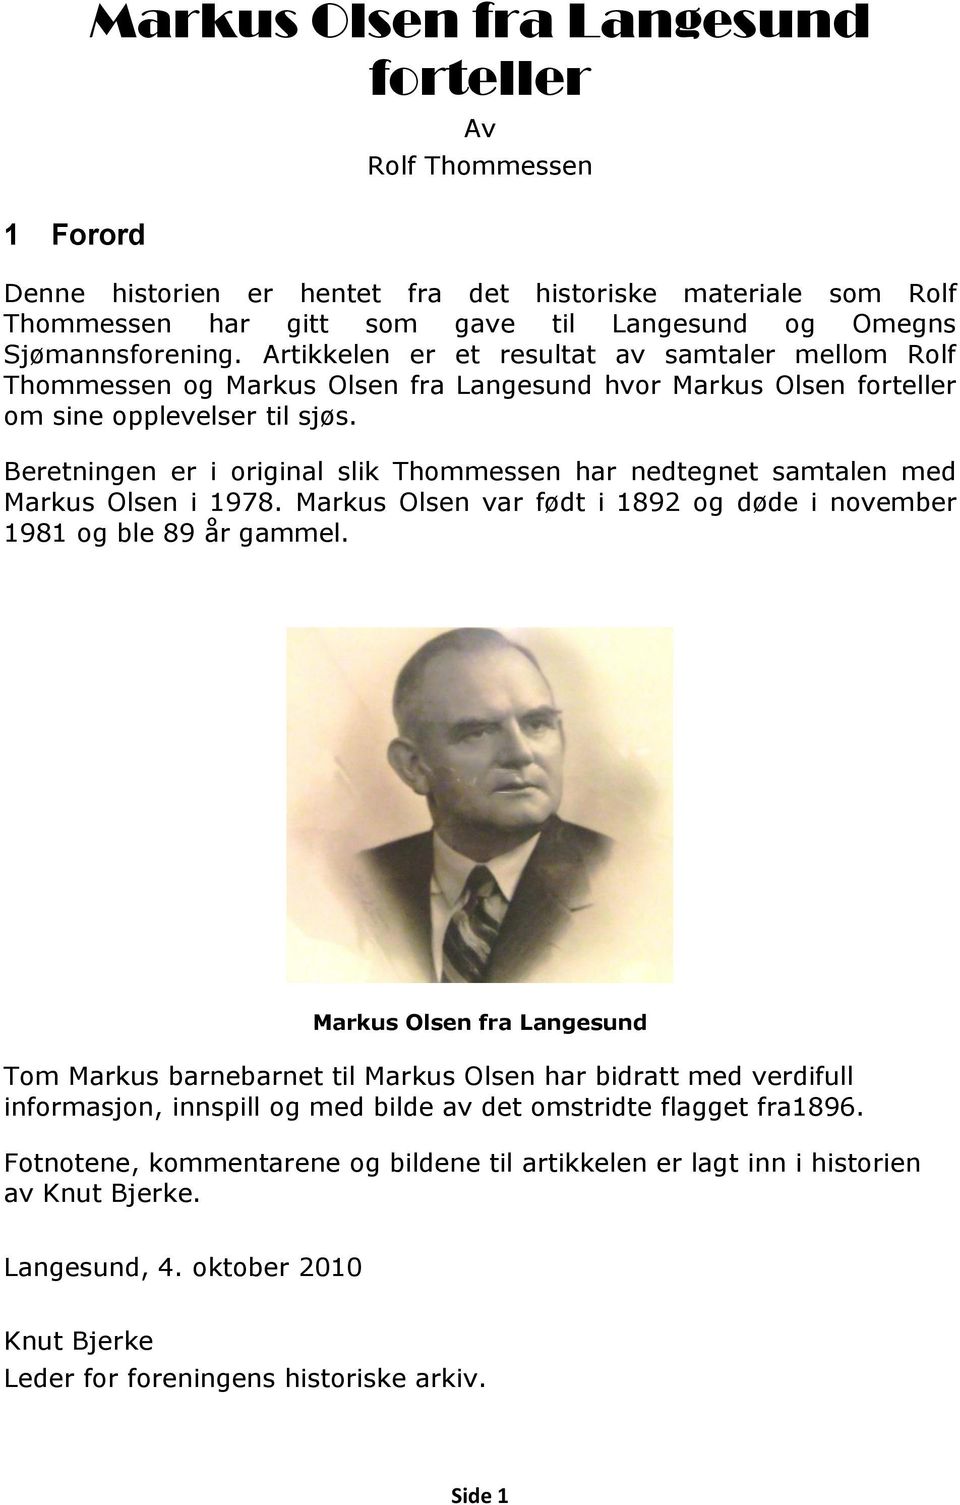 Beretningen er i original slik Thommessen har nedtegnet samtalen med Markus Olsen i 1978. Markus Olsen var født i 1892 og døde i november 1981 og ble 89 år gammel.